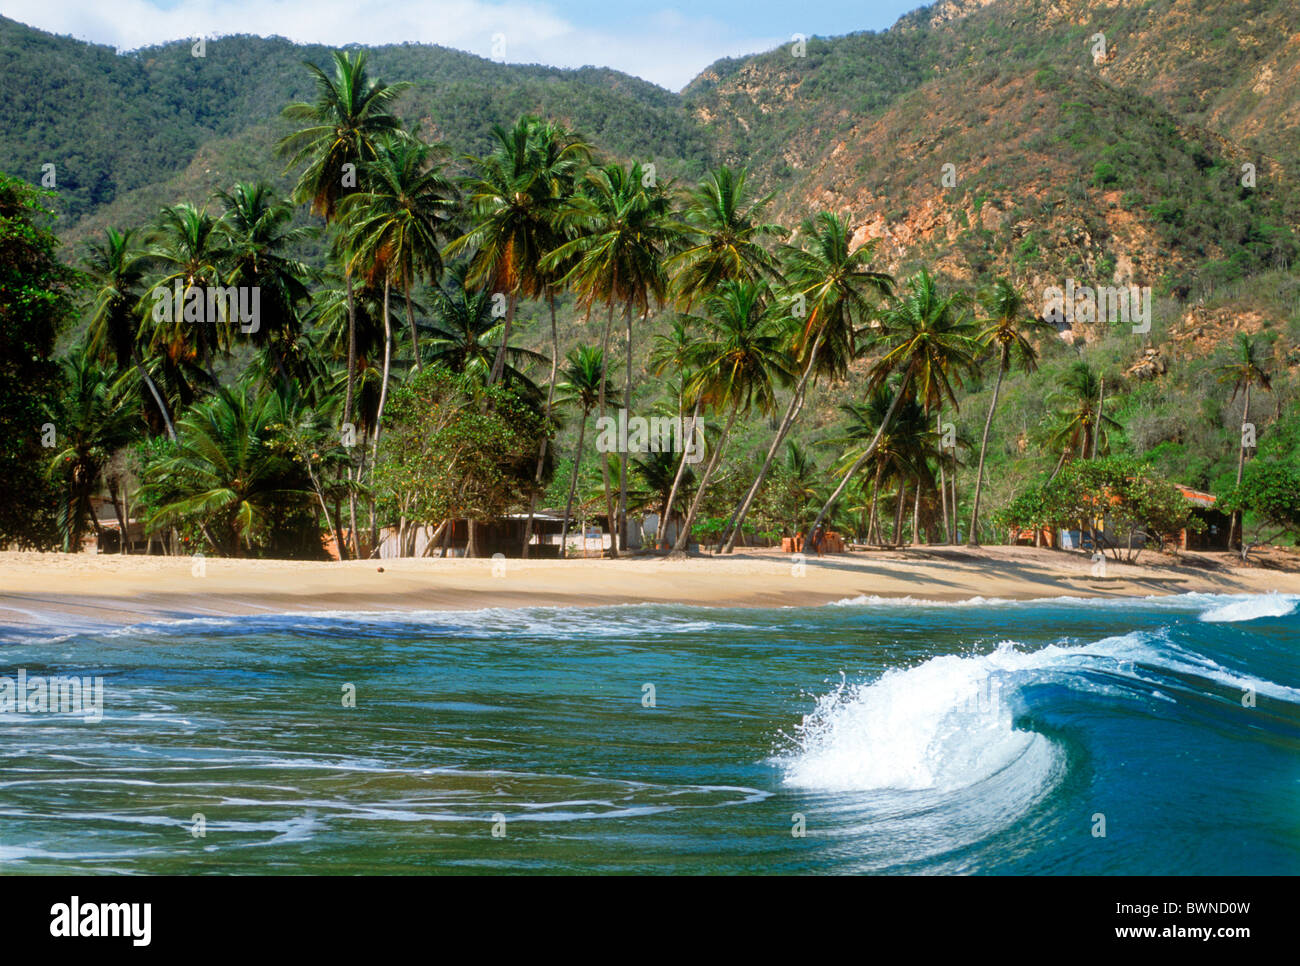 Les vagues venant de sable avec des palmiers au Caribbean village de Choroni environ trois heures à l'ouest de Caracas, Venezuela Banque D'Images